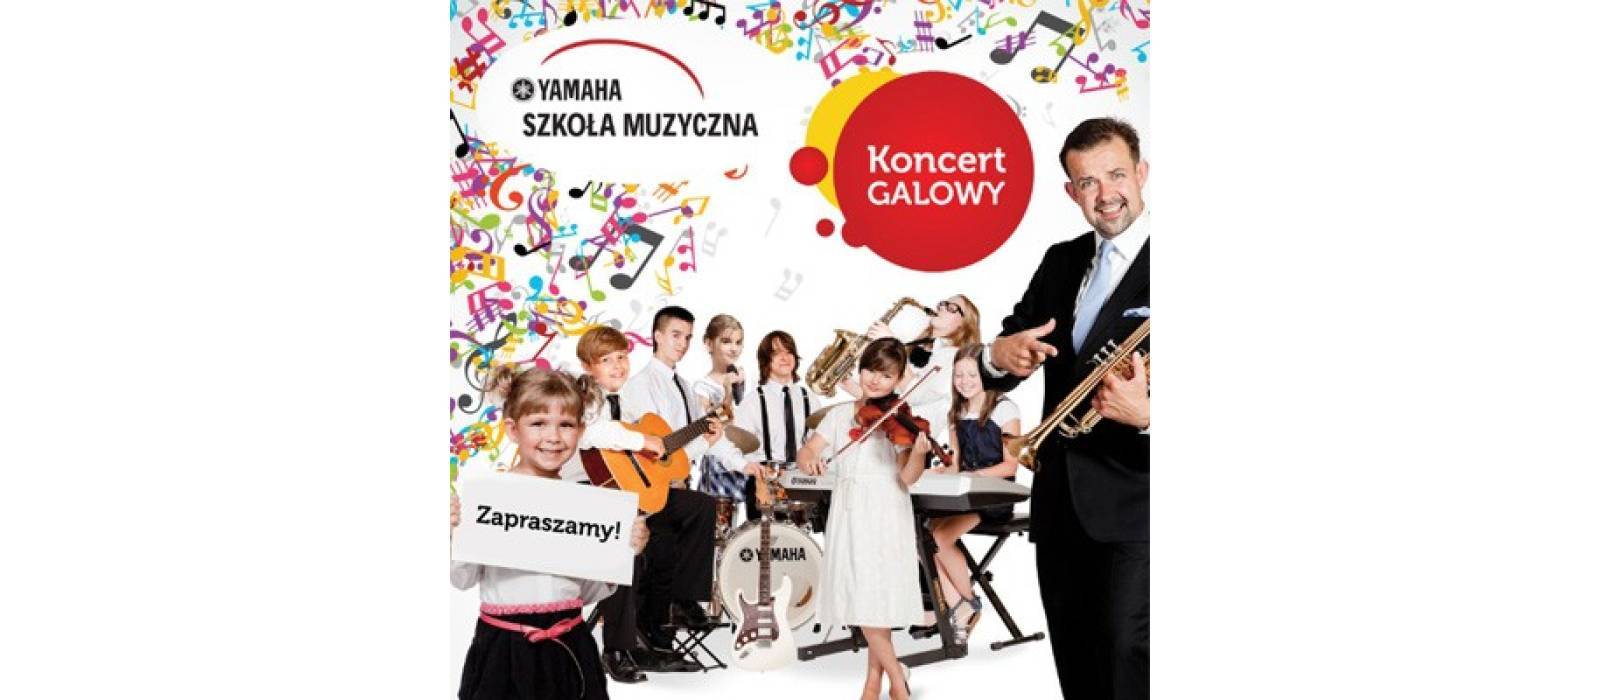 Koncert Galowy Uczniów i Nauczycieli Szkoły Muzycznej Yamaha - 1